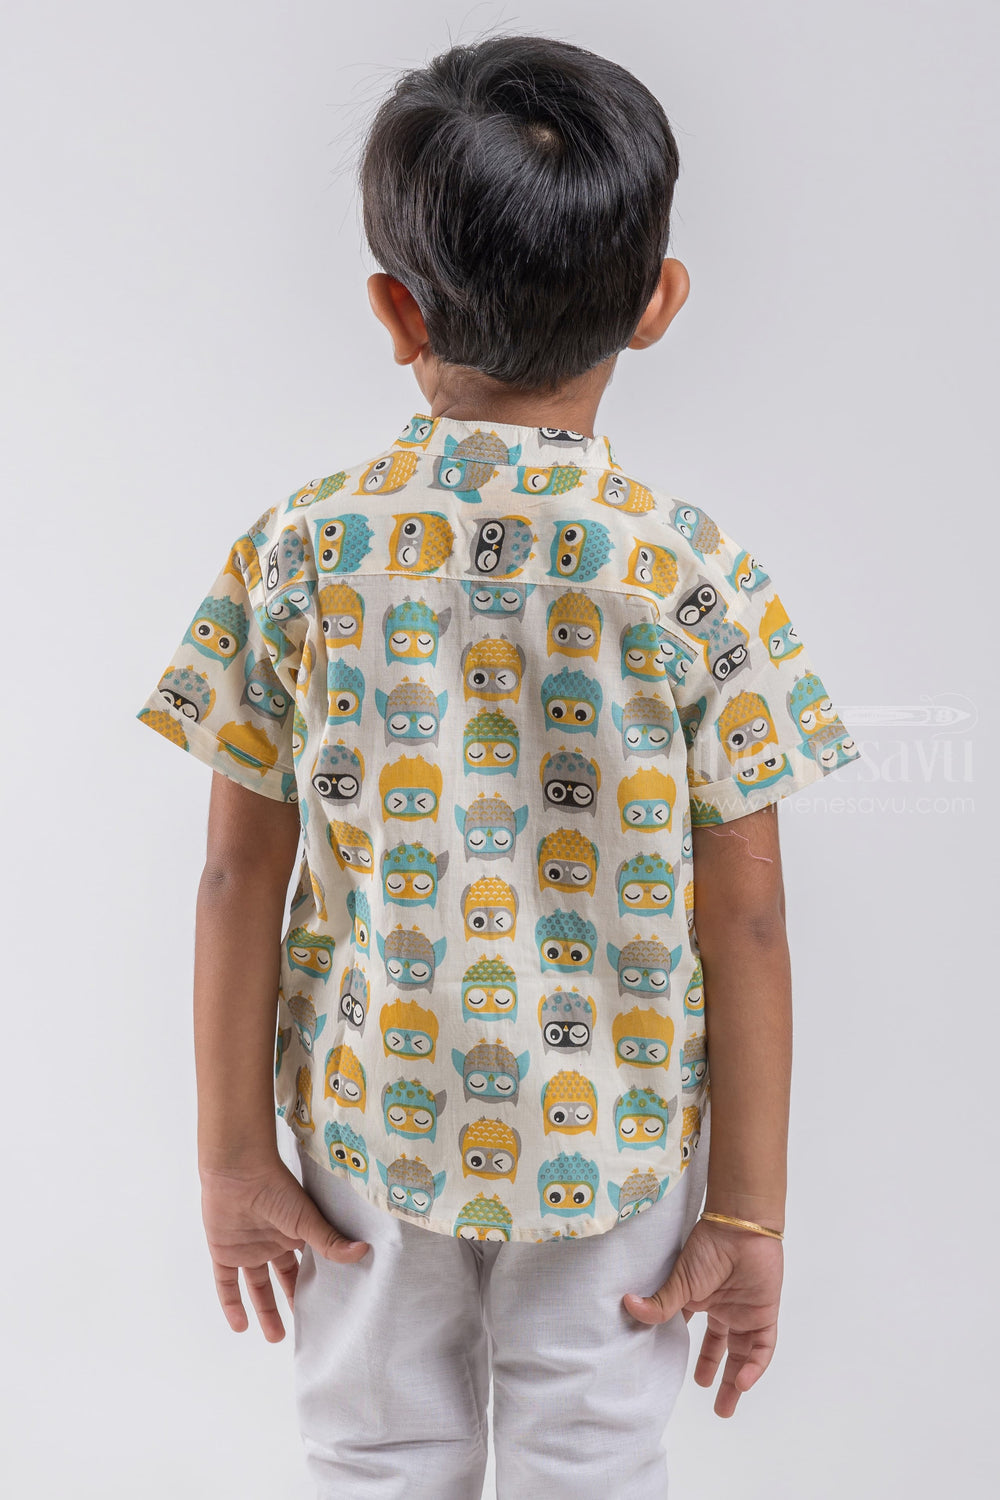 The Nesavu Boys Cotton Shirt Indie Wear Shirt for Boys | Wooden Button Detail | Nesavu | Sleepy Owl Printed psr silks Nesavu